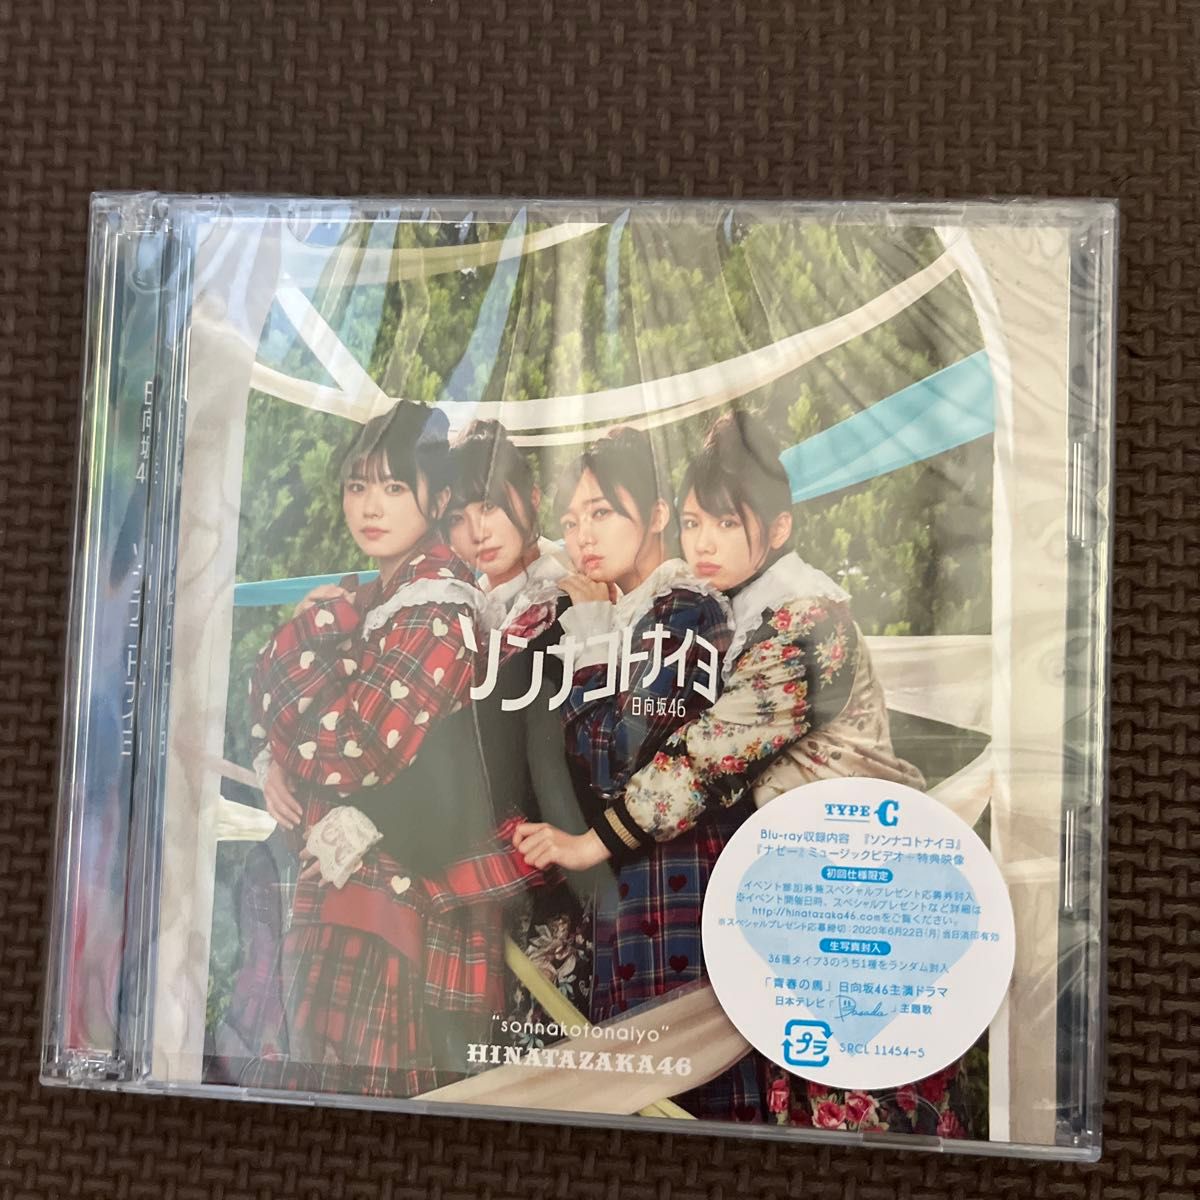 初回仕様限定盤TYPE-C 日向坂46 CD+Blu-ray/ソンナコトナイヨ 20/2/19発売 オリコン加盟店